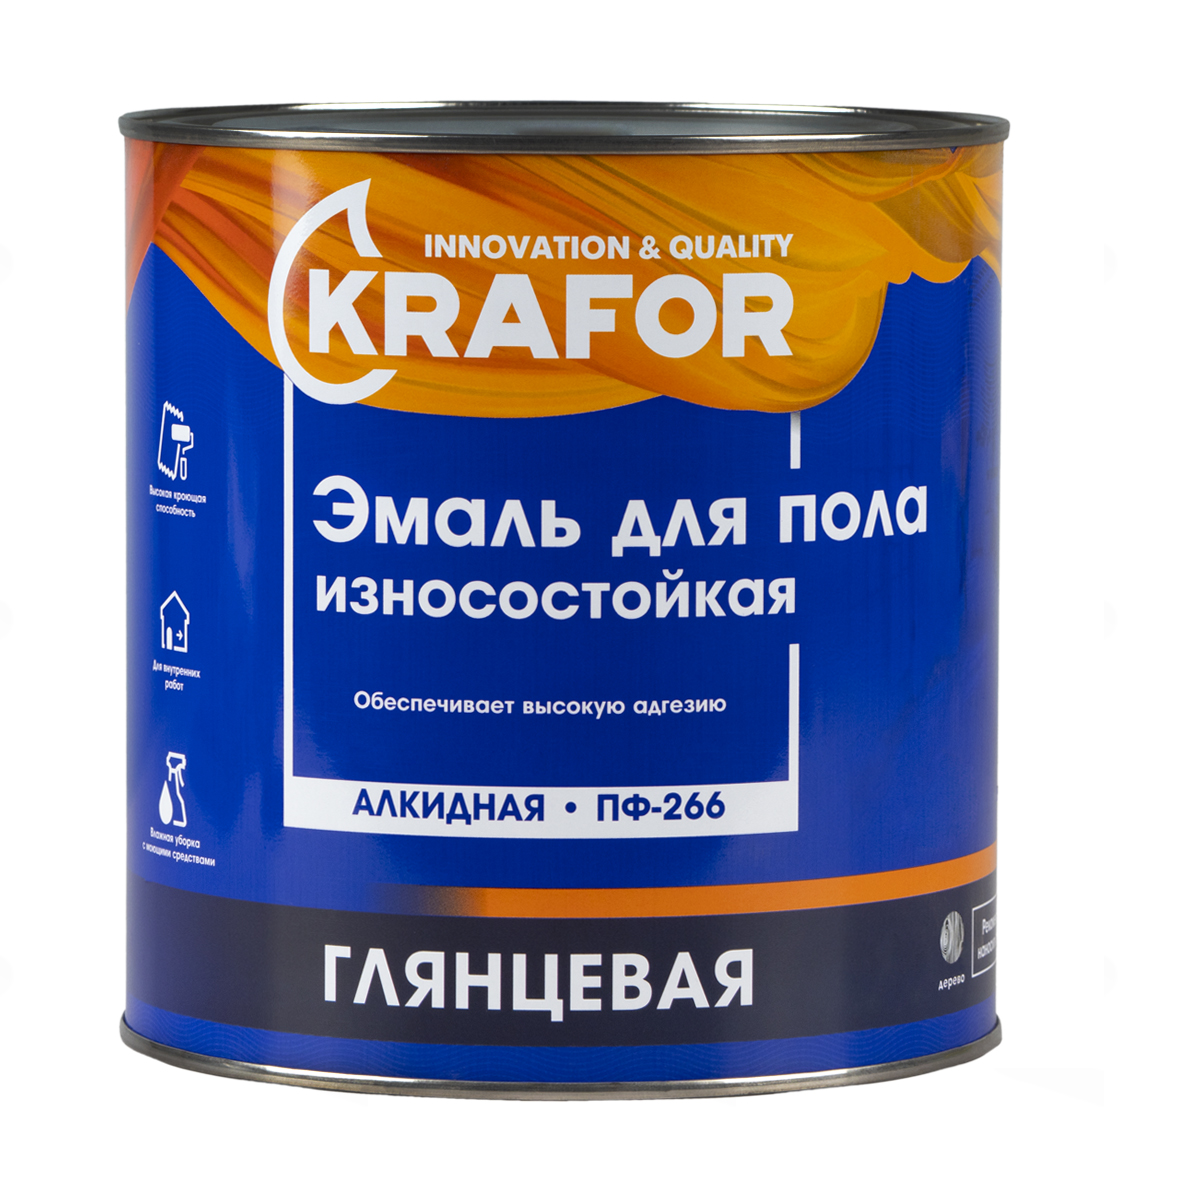 Эмаль ПФ-266 для пола Krafor, алкидная, глянцевая, 2,7 кг, красно-коричневая износостойкая эмаль для пола krafor пф 266 красно коричневая 0 9 кг 6 206156